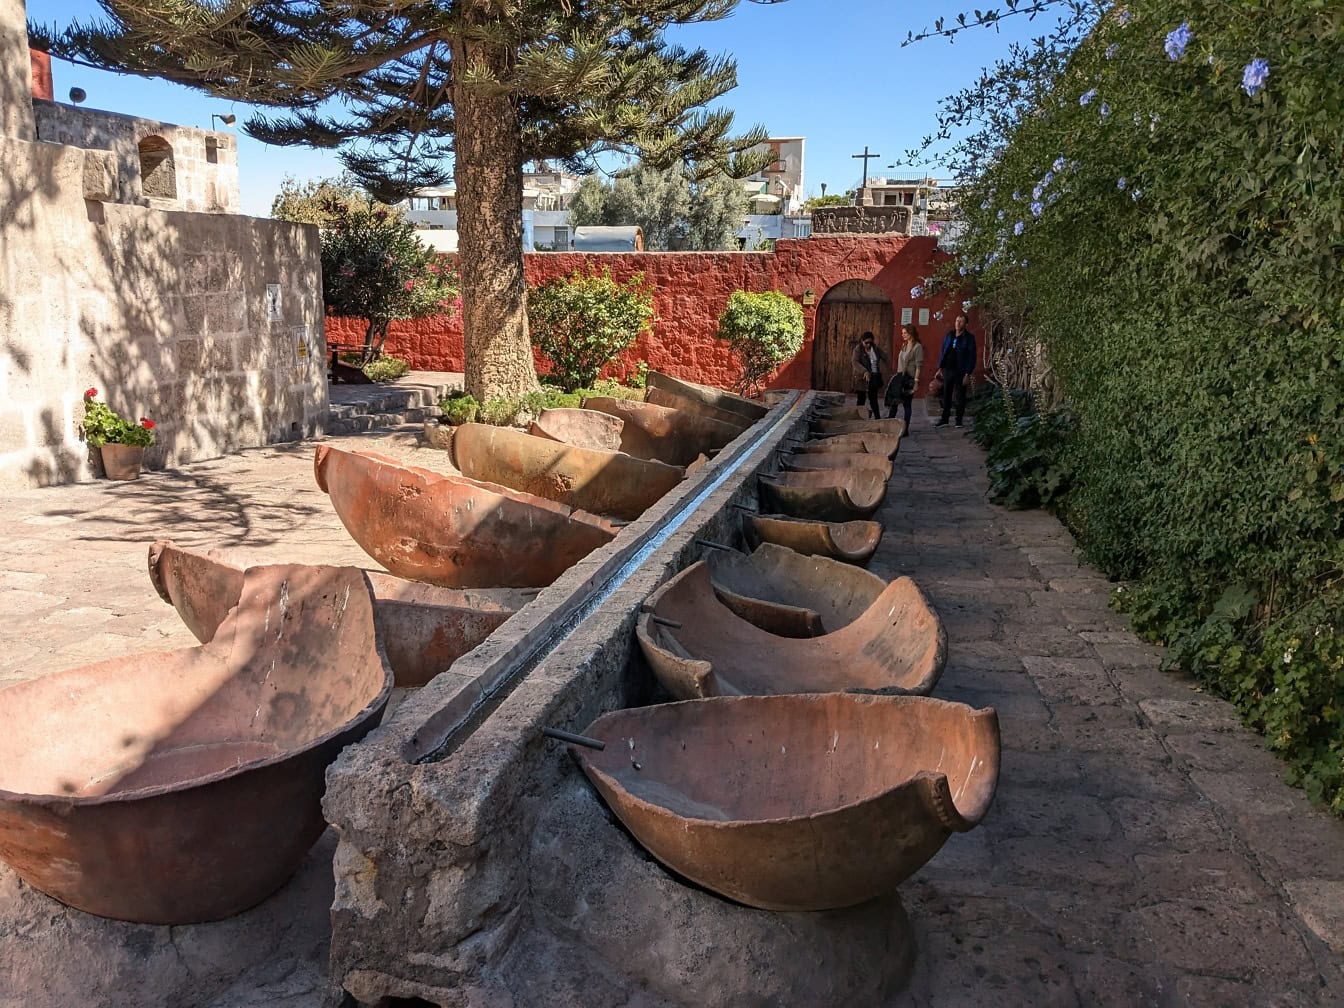 페루 아레키파에 있는 산타 카탈리나 수도원 정원에 있는 돌 블록에 큰 그릇이 있는 분수